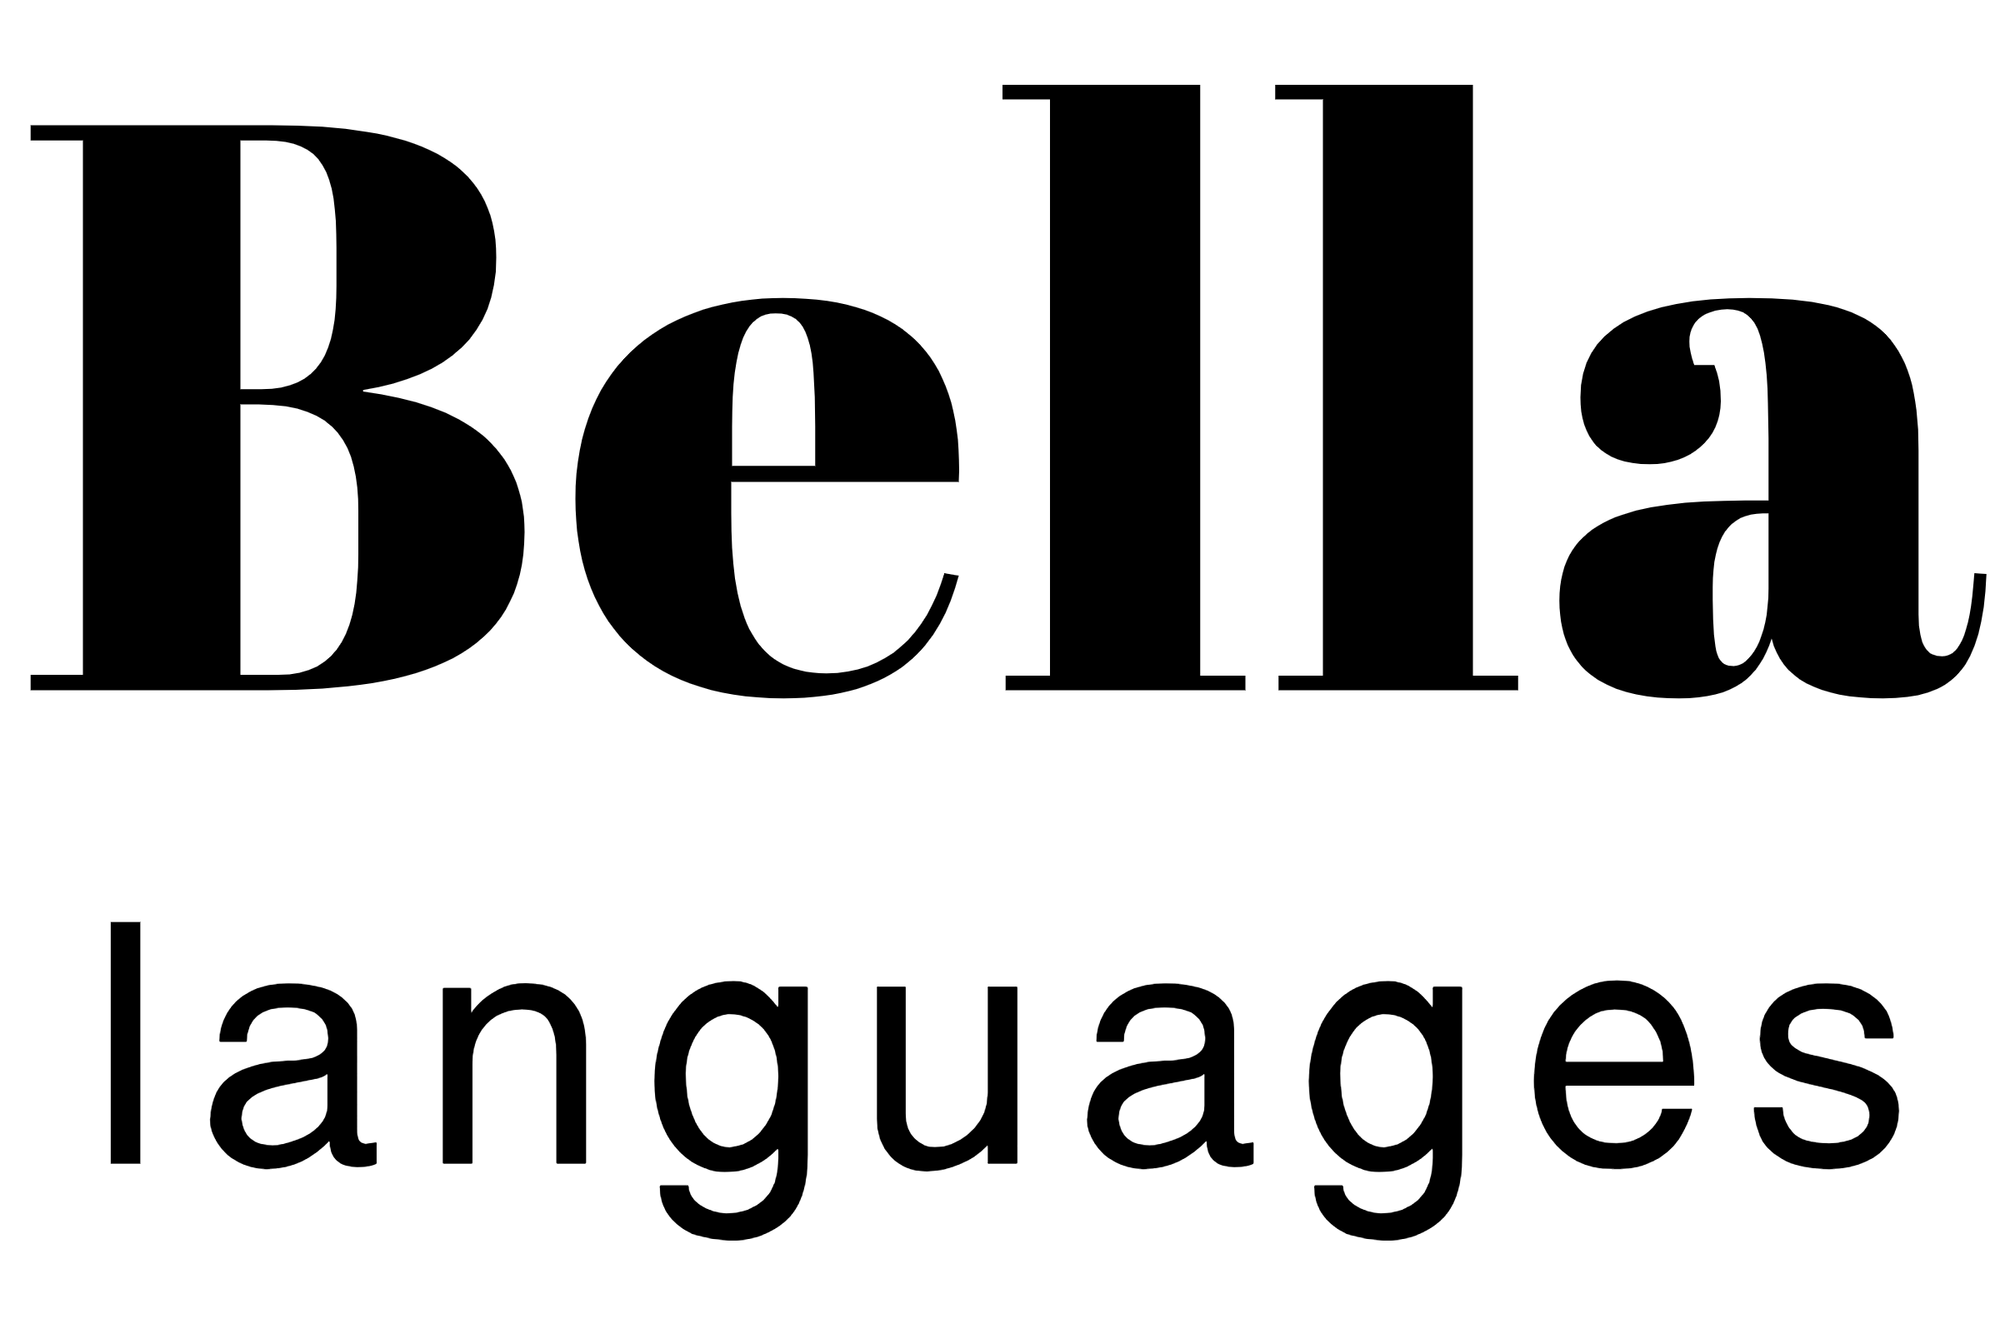 Bella's languages